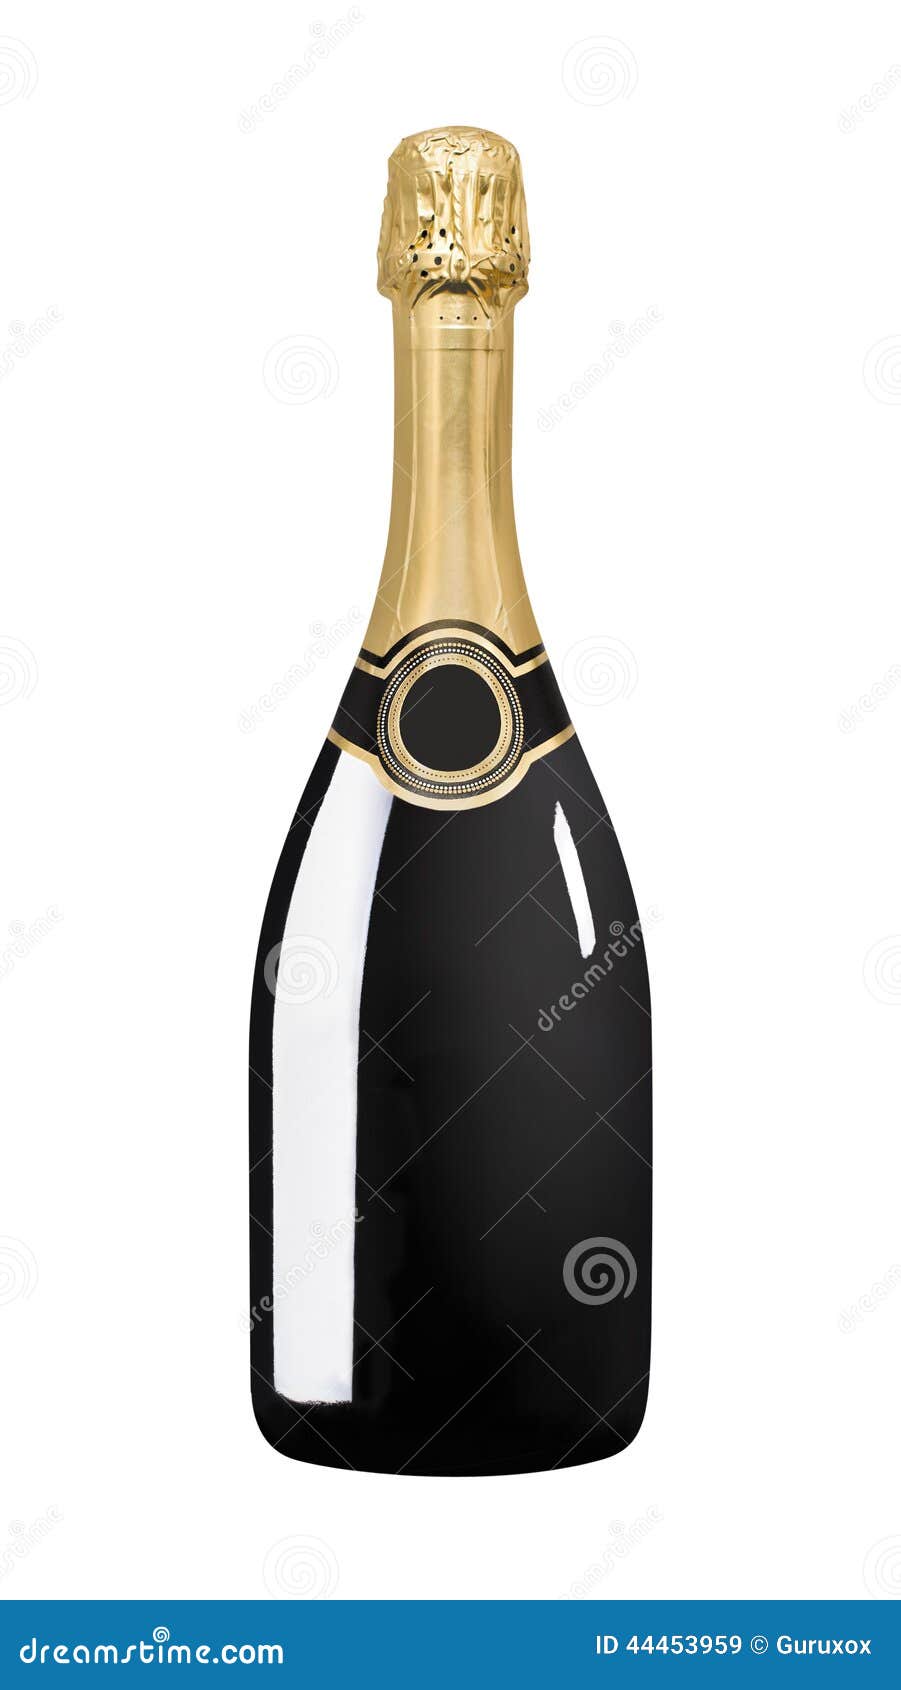 sparkling black wine bottle